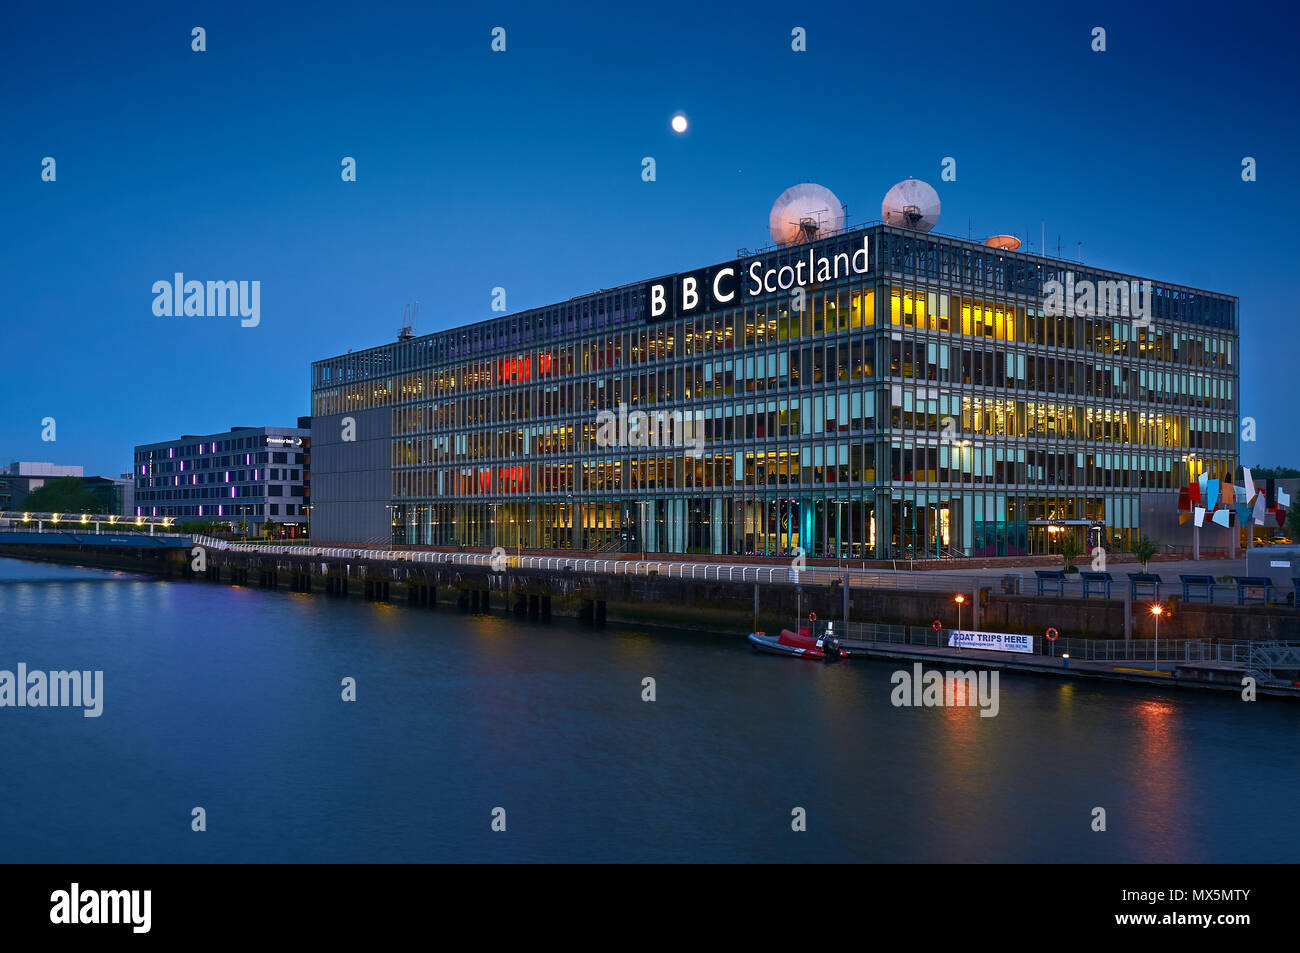 Quartier generale della British Broadcasting Corporation in Glasgow (BBC Scotland) a notte. Foto Stock